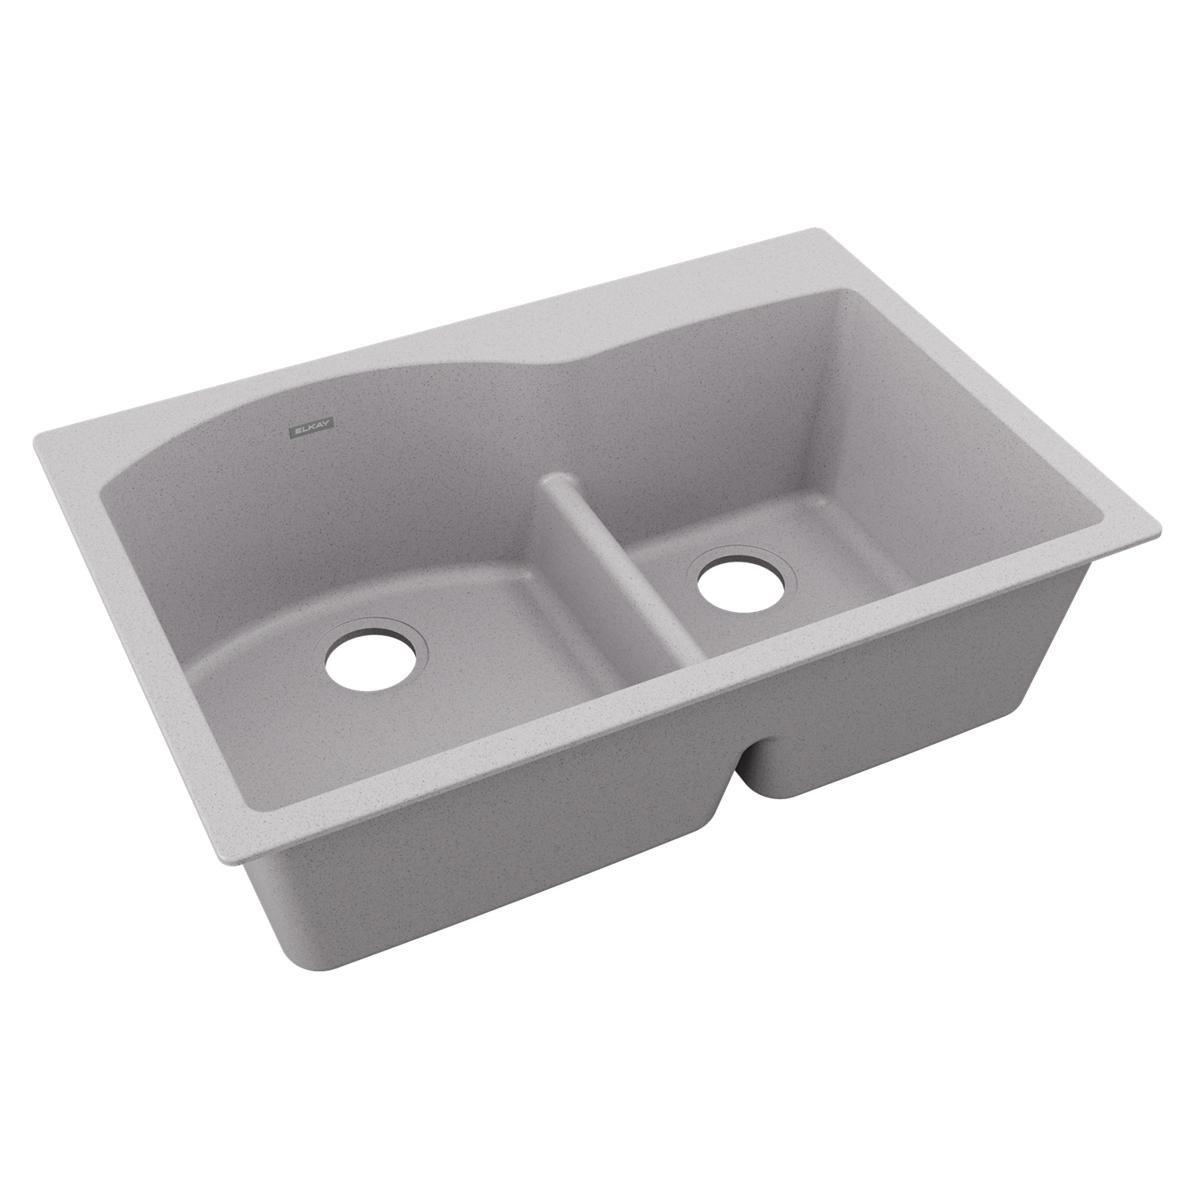 Elkay Quartz Classic 33" x 22" x 10" Offset 60/40 Double Bowl Drop-in Sink with Aqua Divide